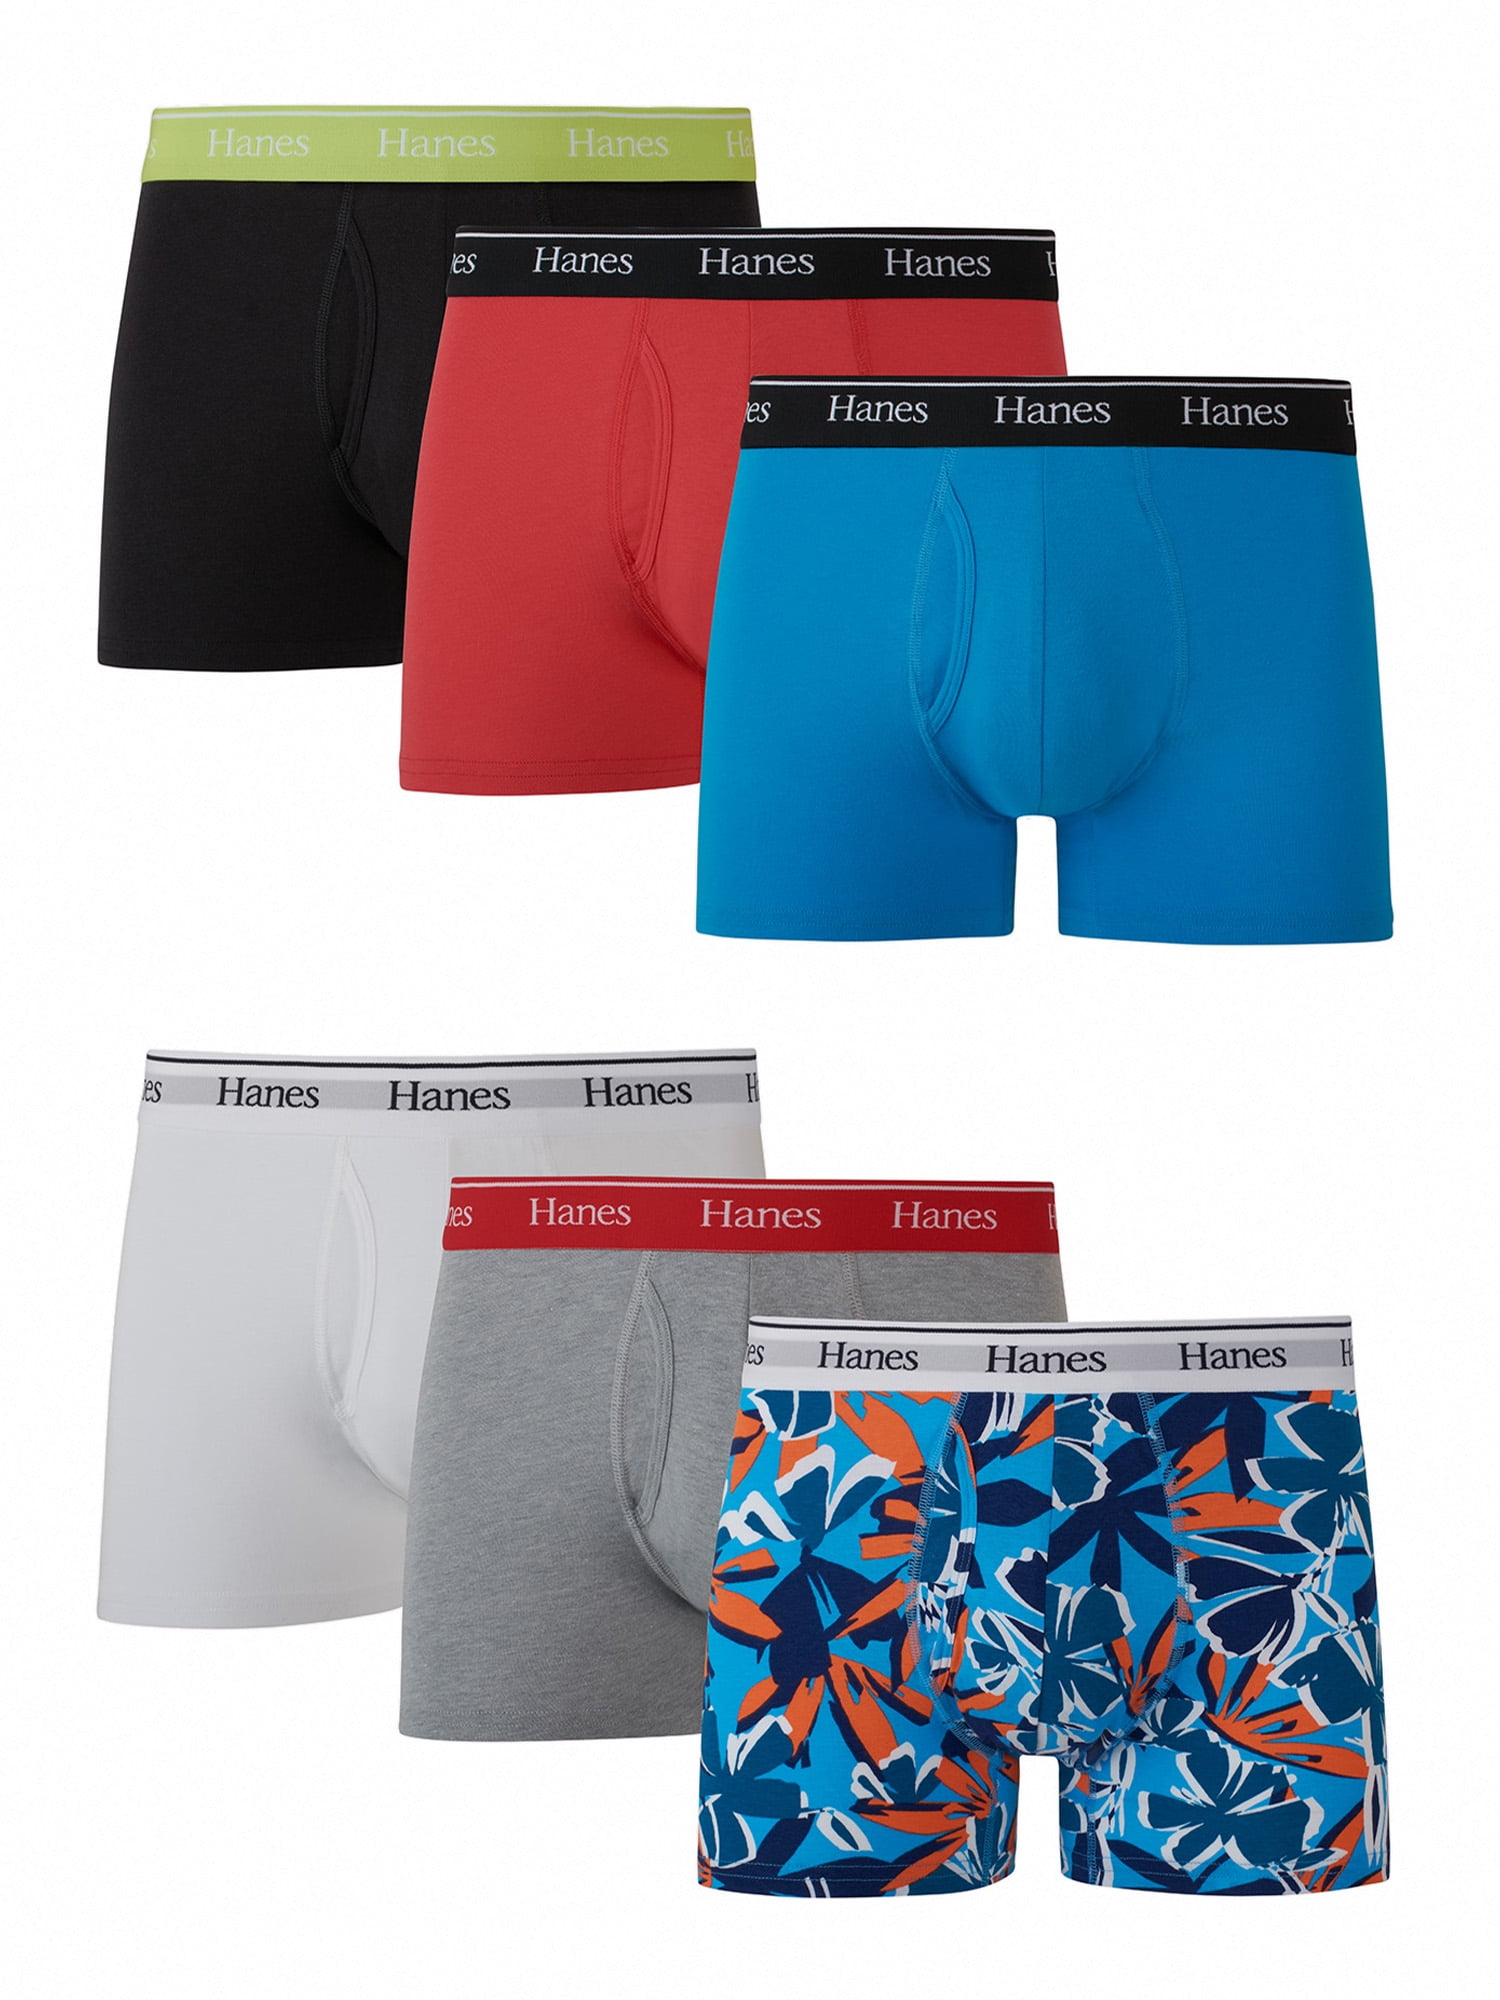 Hanes Originals Men's Underwear Trunks, Moisture-Wicking Stretch Cotton,  6-Pack 